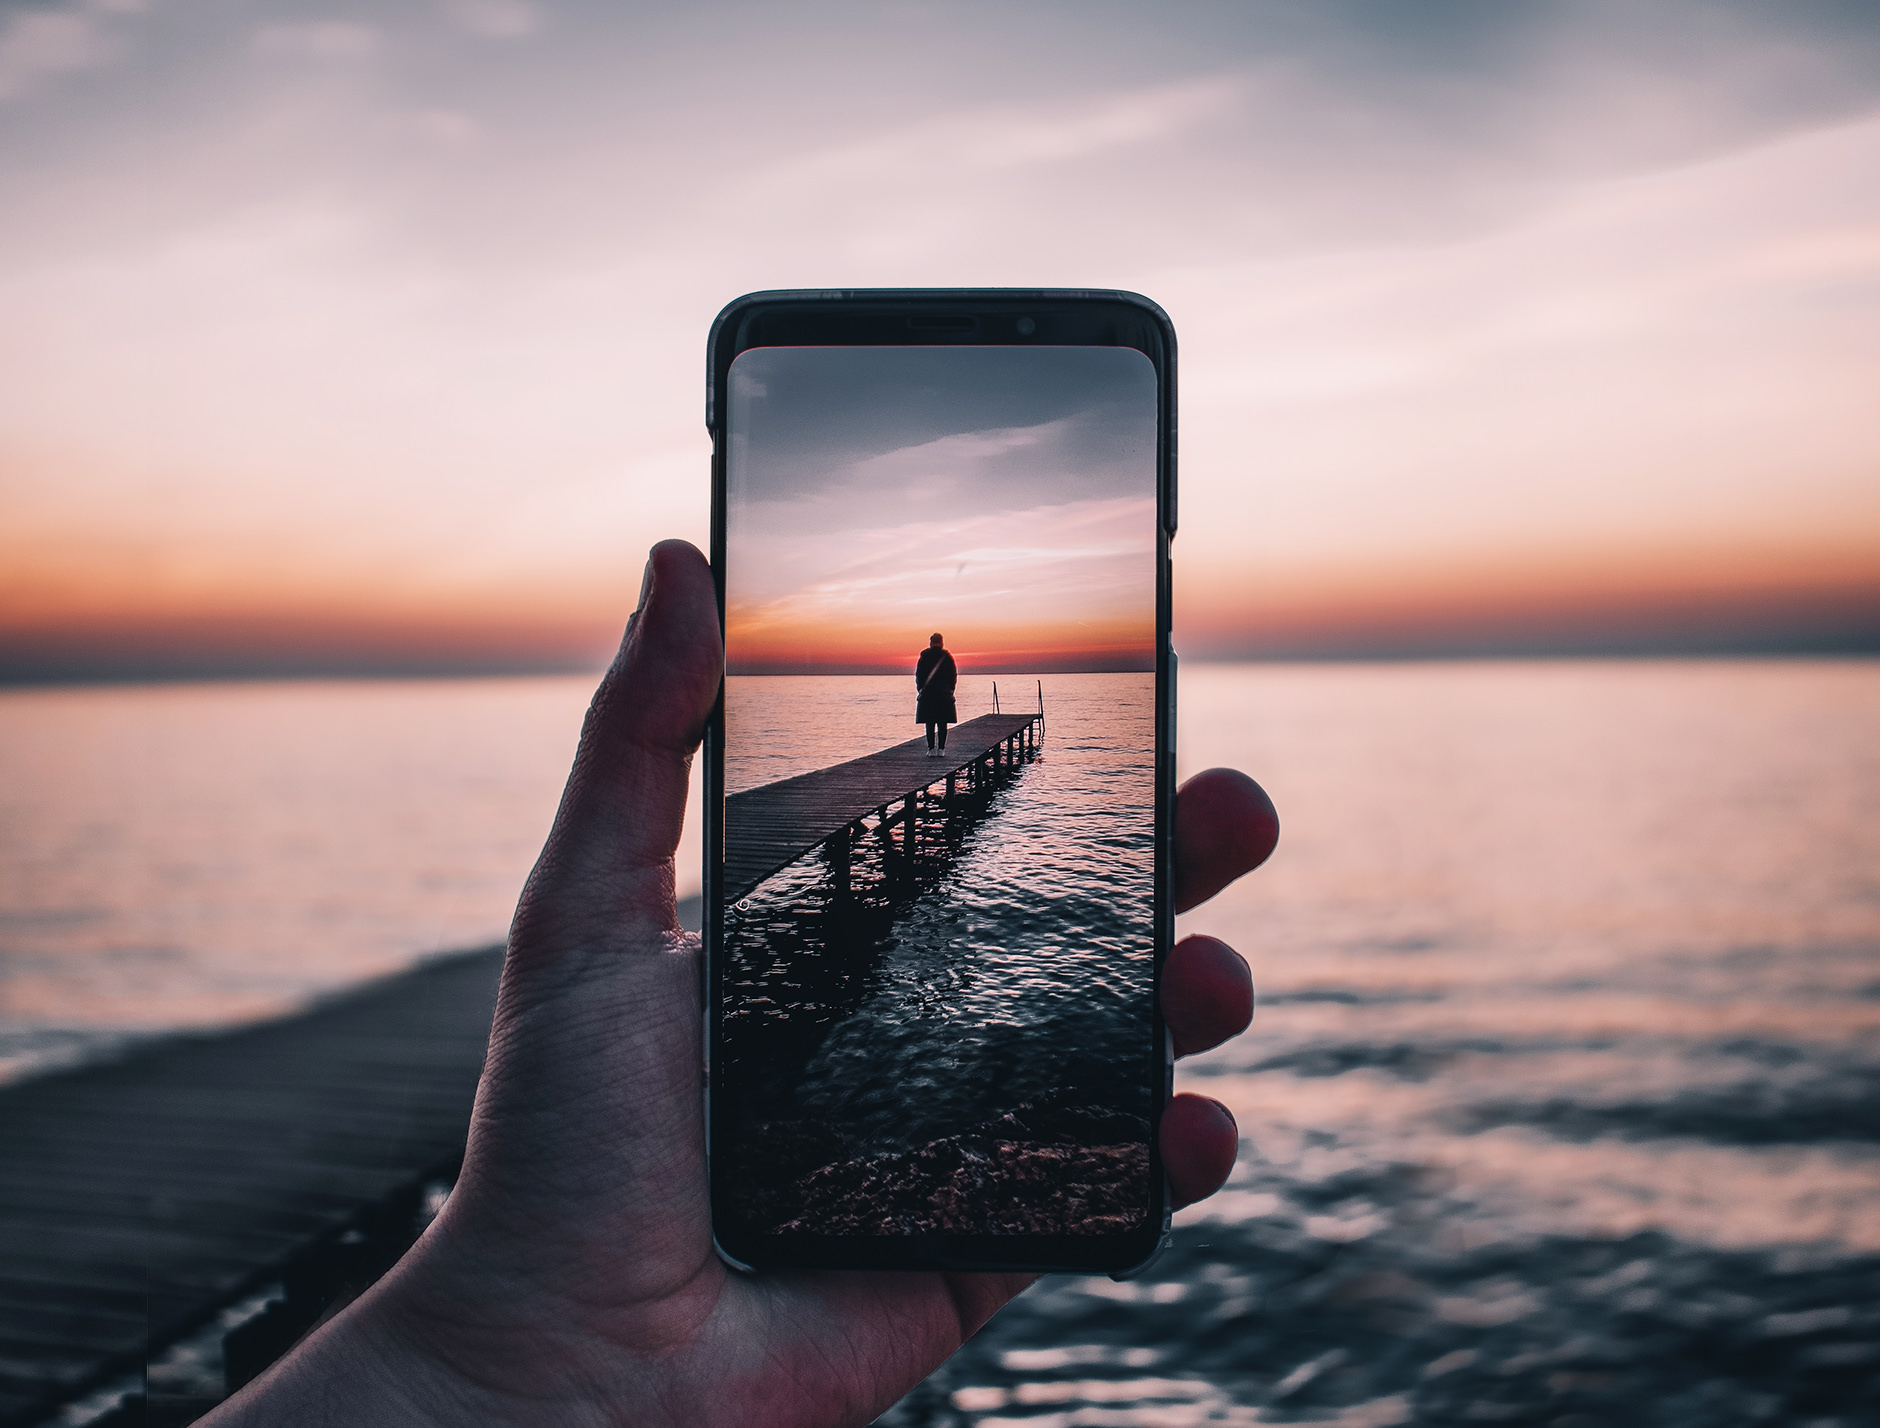 Mano che tiene iPhone nella vista della fotocamera con una persona sul molo al tramonto.